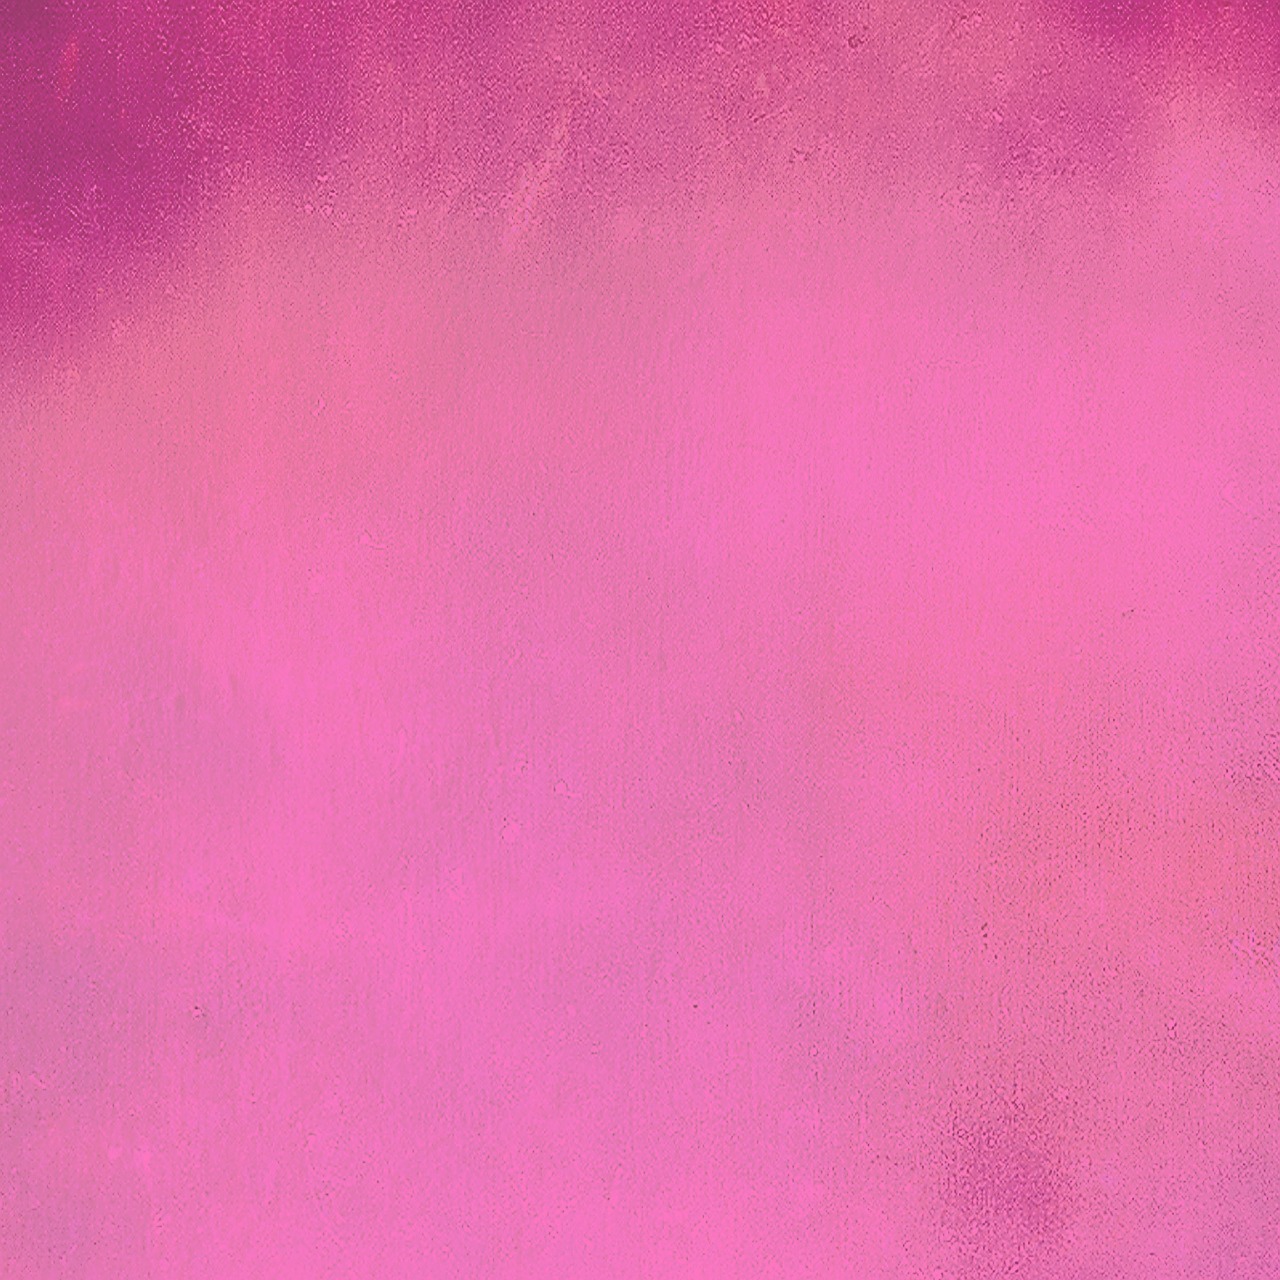 pink background pattern free photo